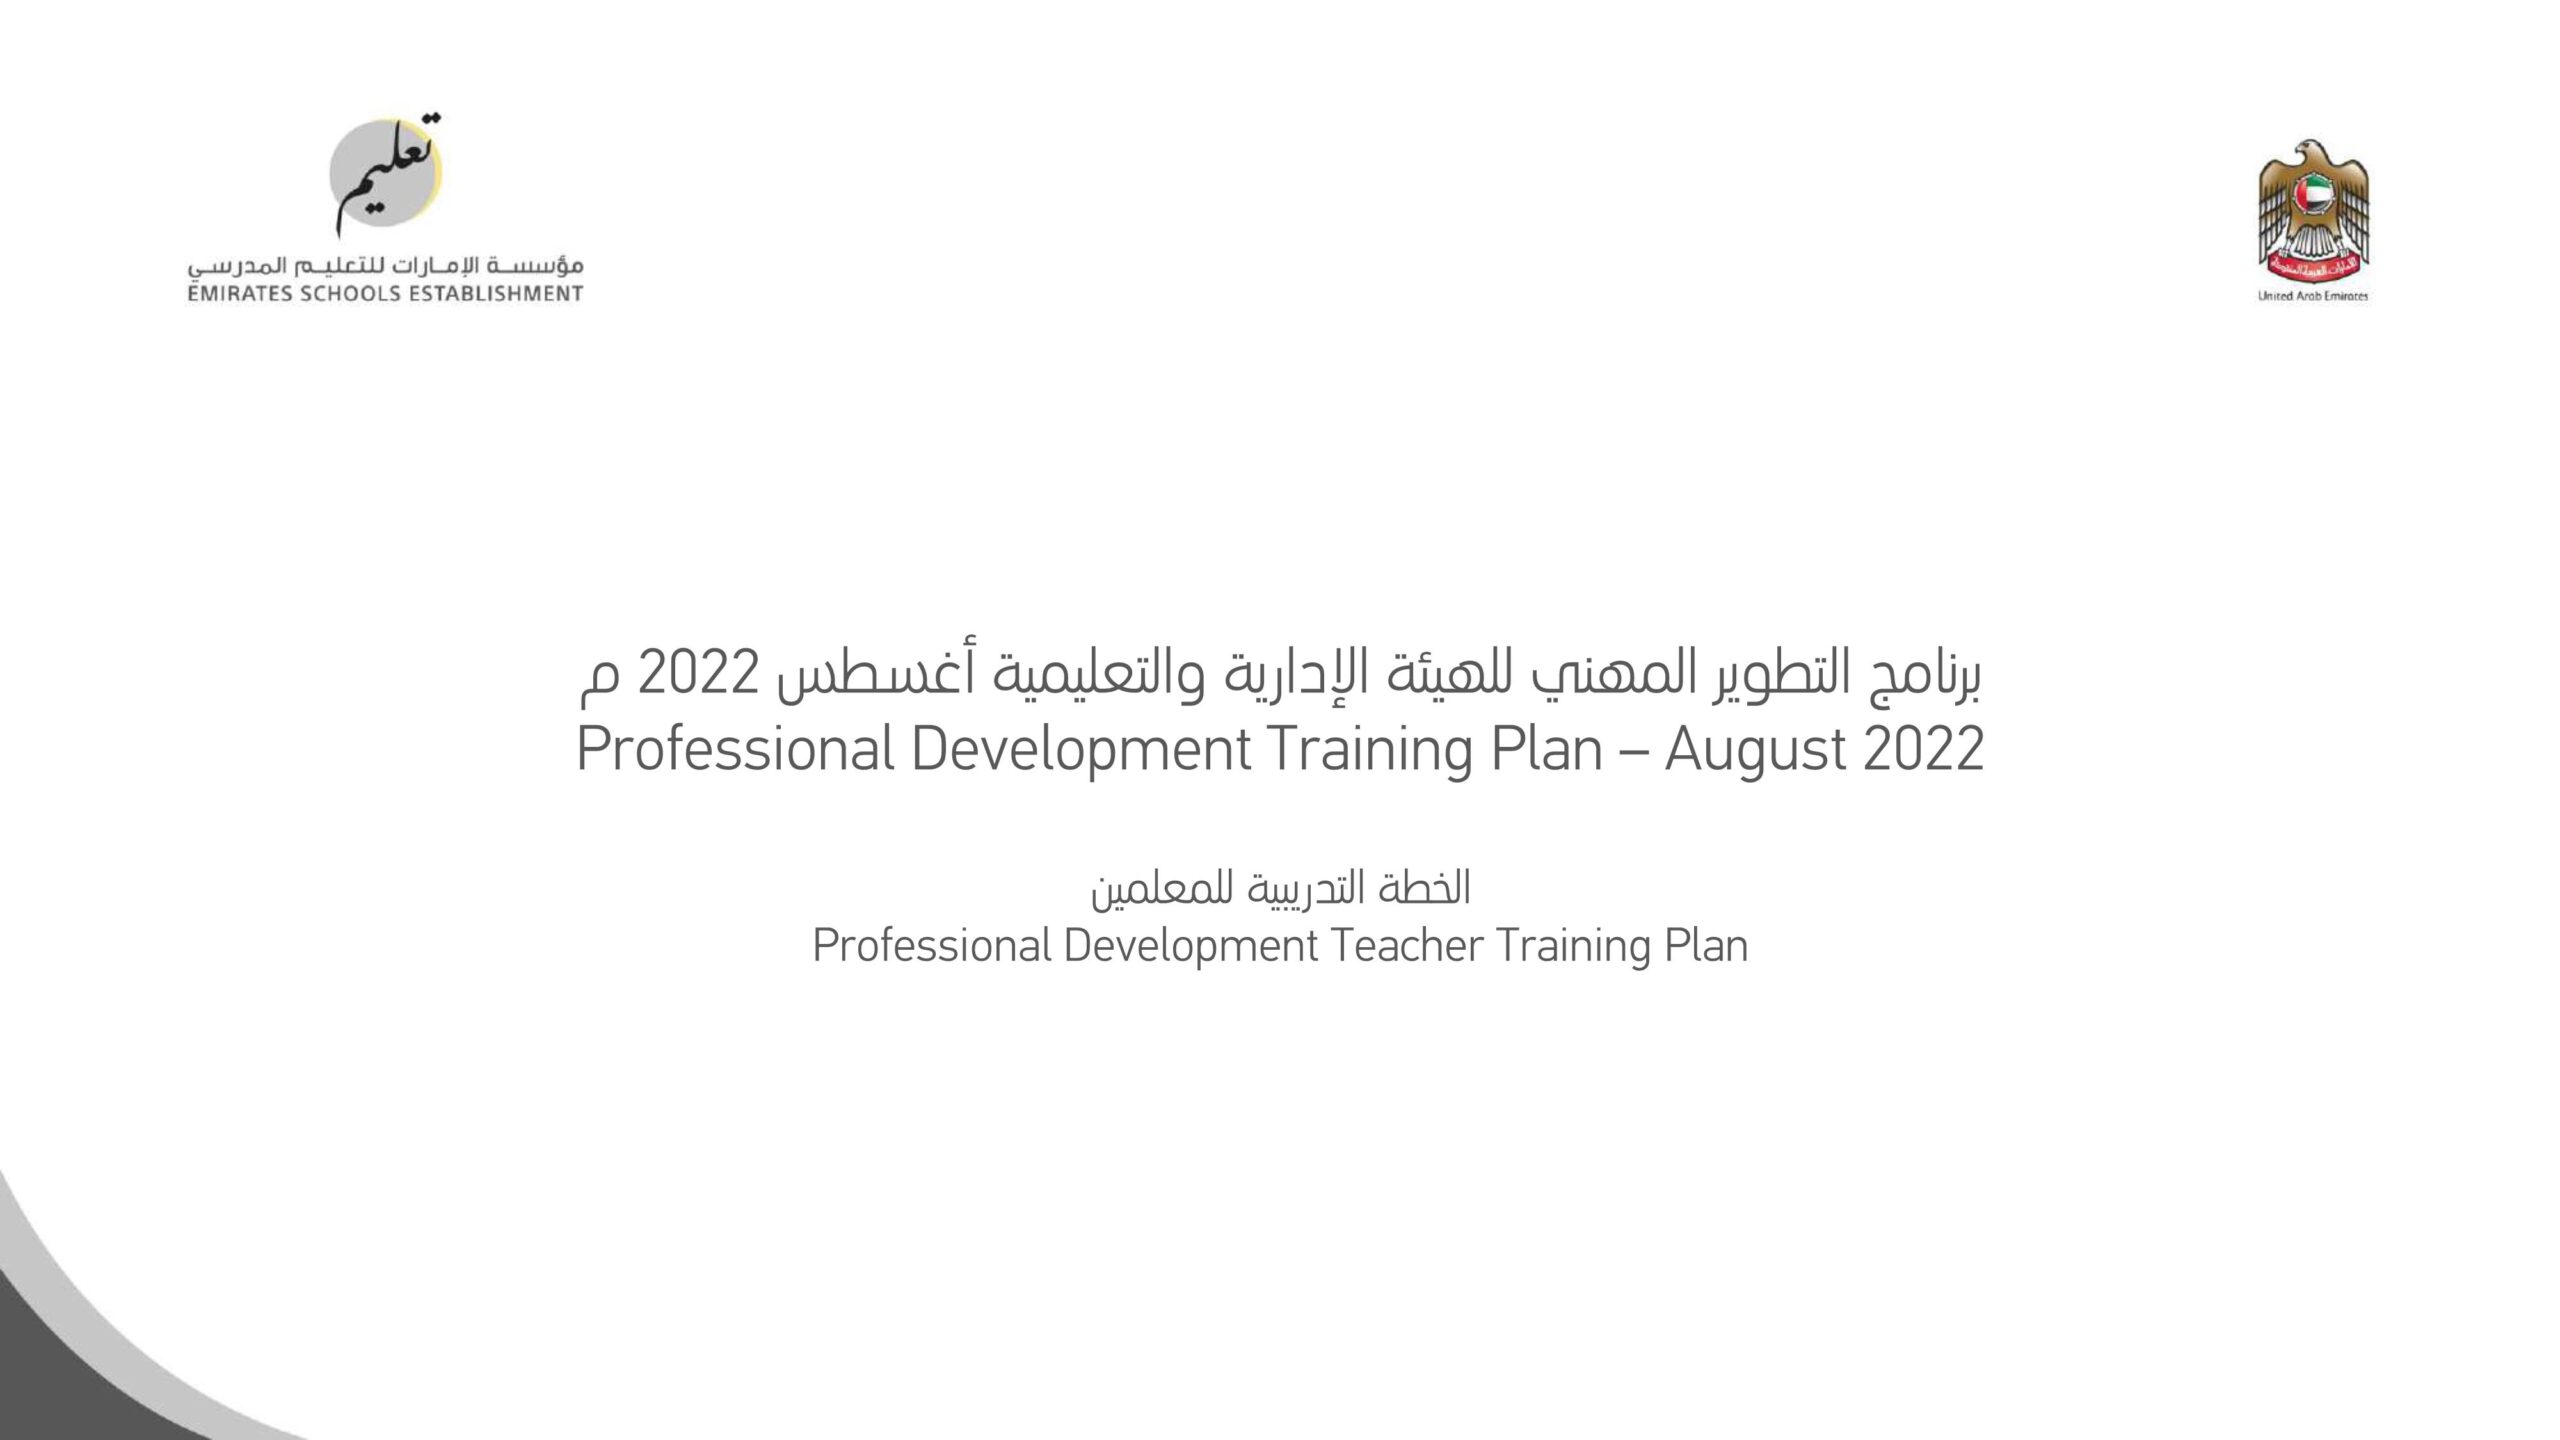 برنامج التطوير المهني للهيئة الإدارية والتعليمية أغسطس 2022